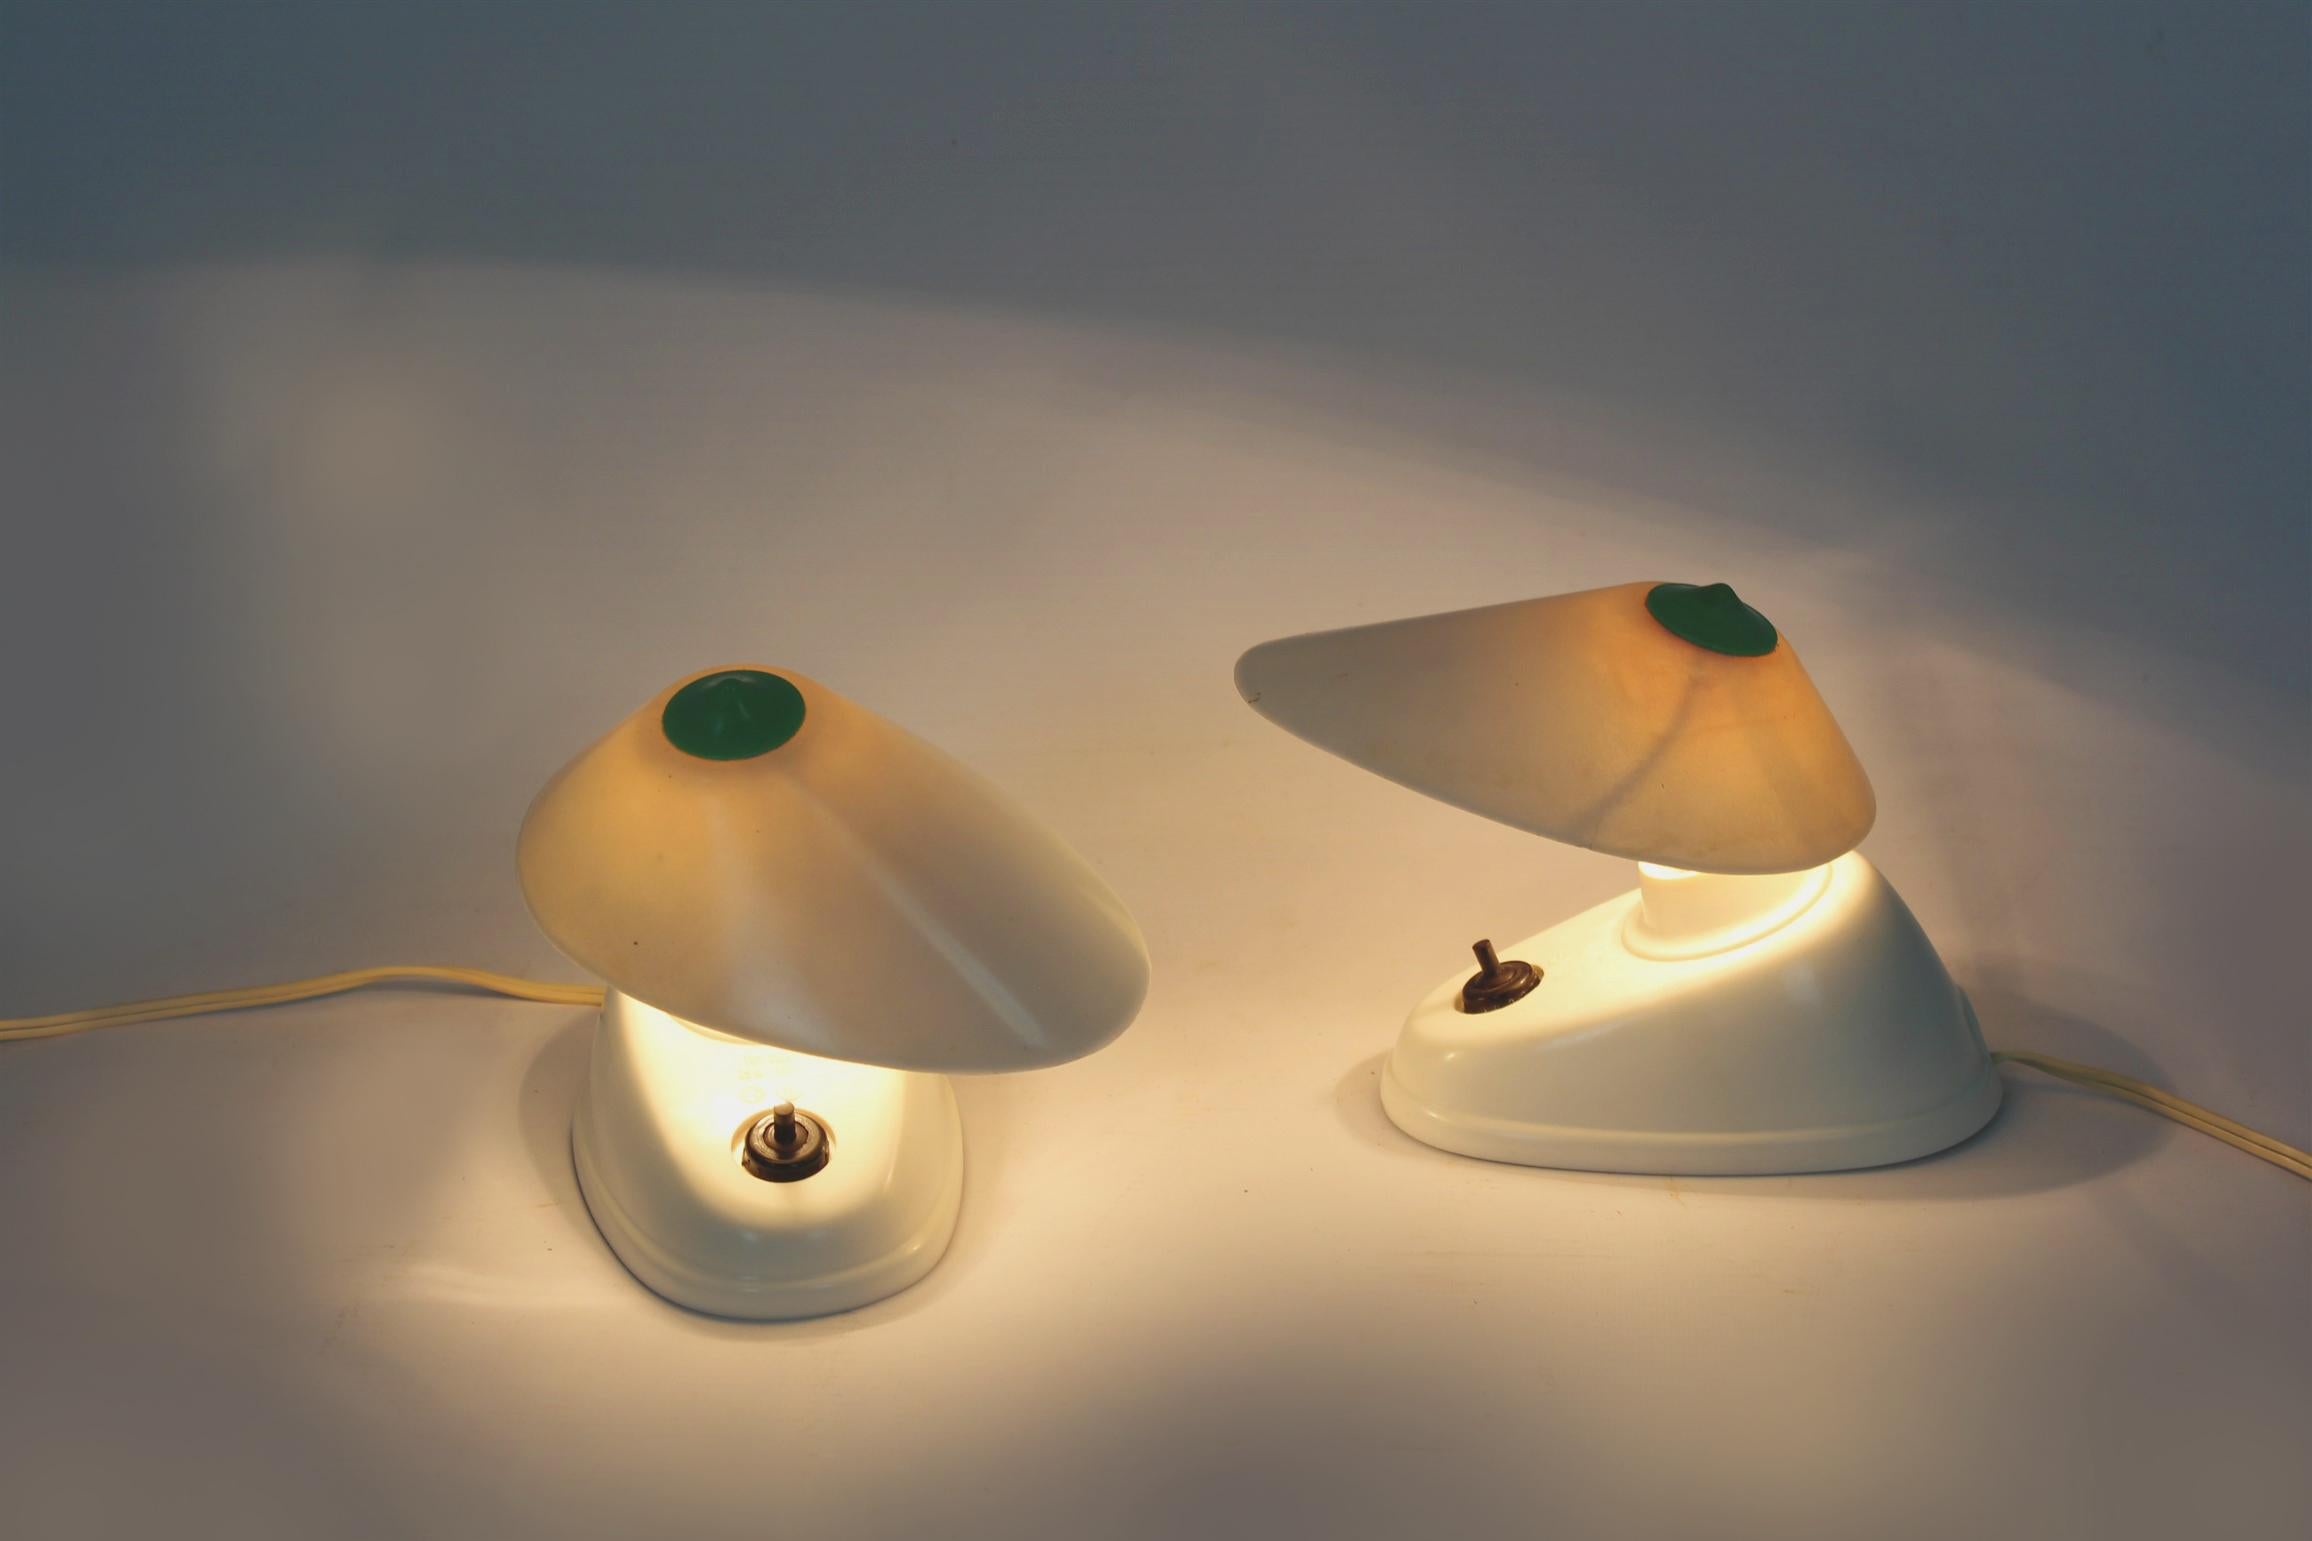 
Ensemble de deux lampes de table en bakélite de style Bauhaus, produites en Tchécoslovaquie dans les années 1940. Forme asymétrique, angle réglable de l'abat-jour. Les lampes portent une désignation de modèle visible (11641) et le logo du fabricant